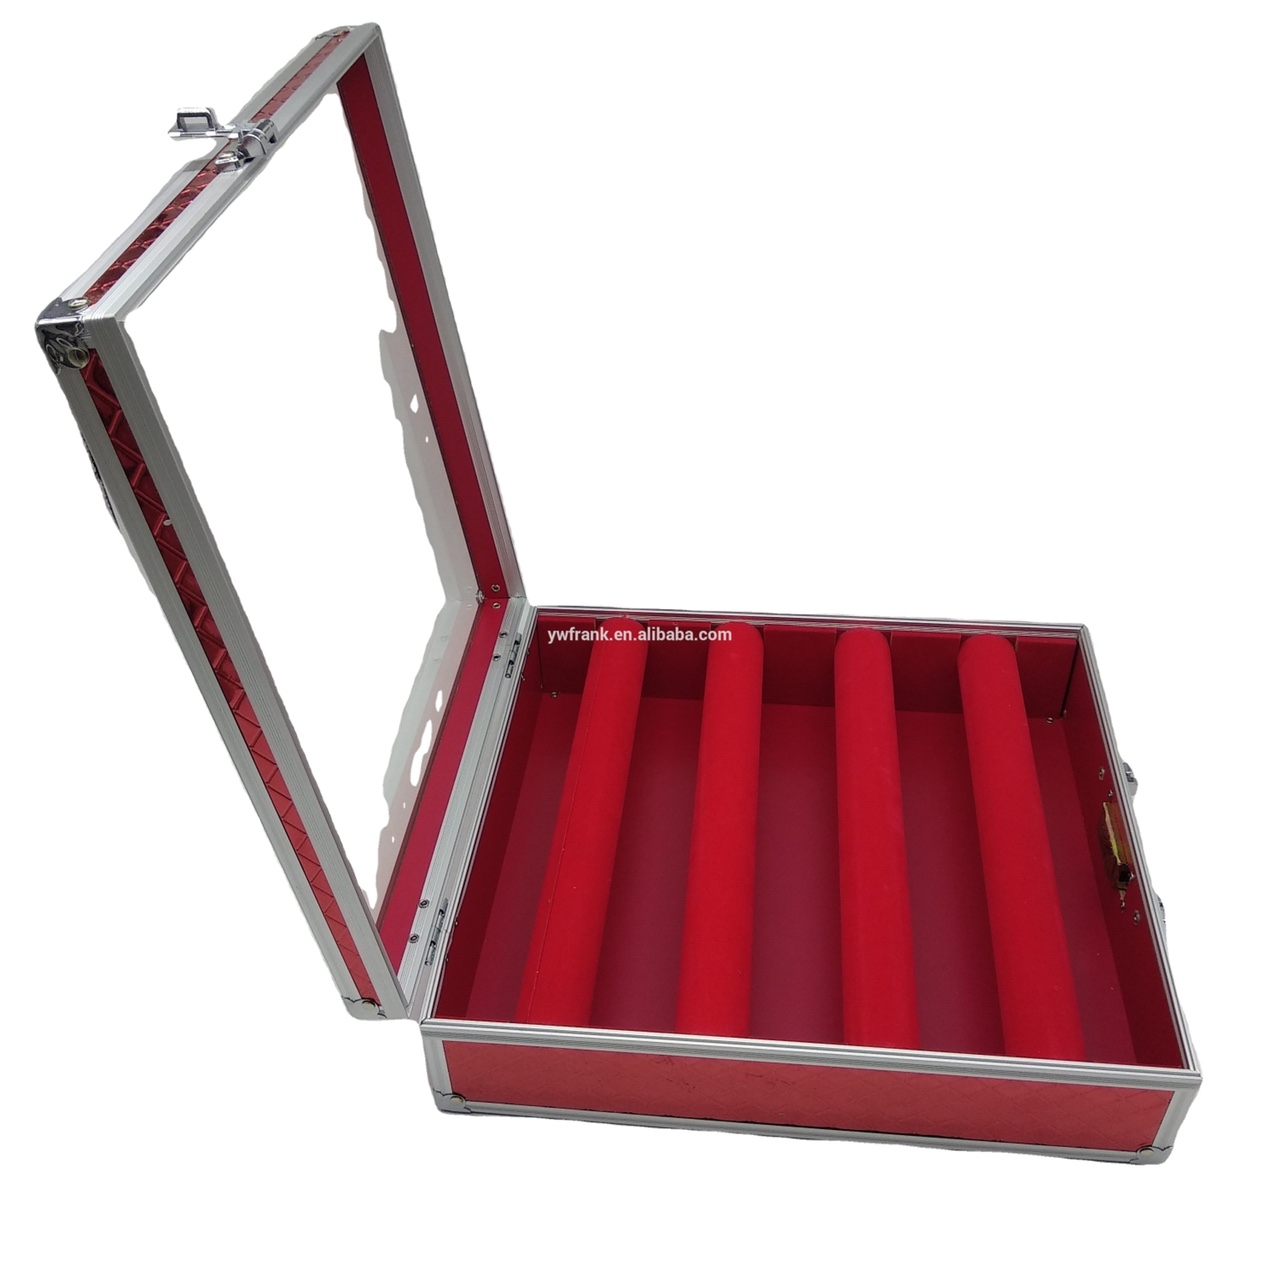 大号手镯箱铝合金化妆箱手提便携收纳箱盒专业带锁加图